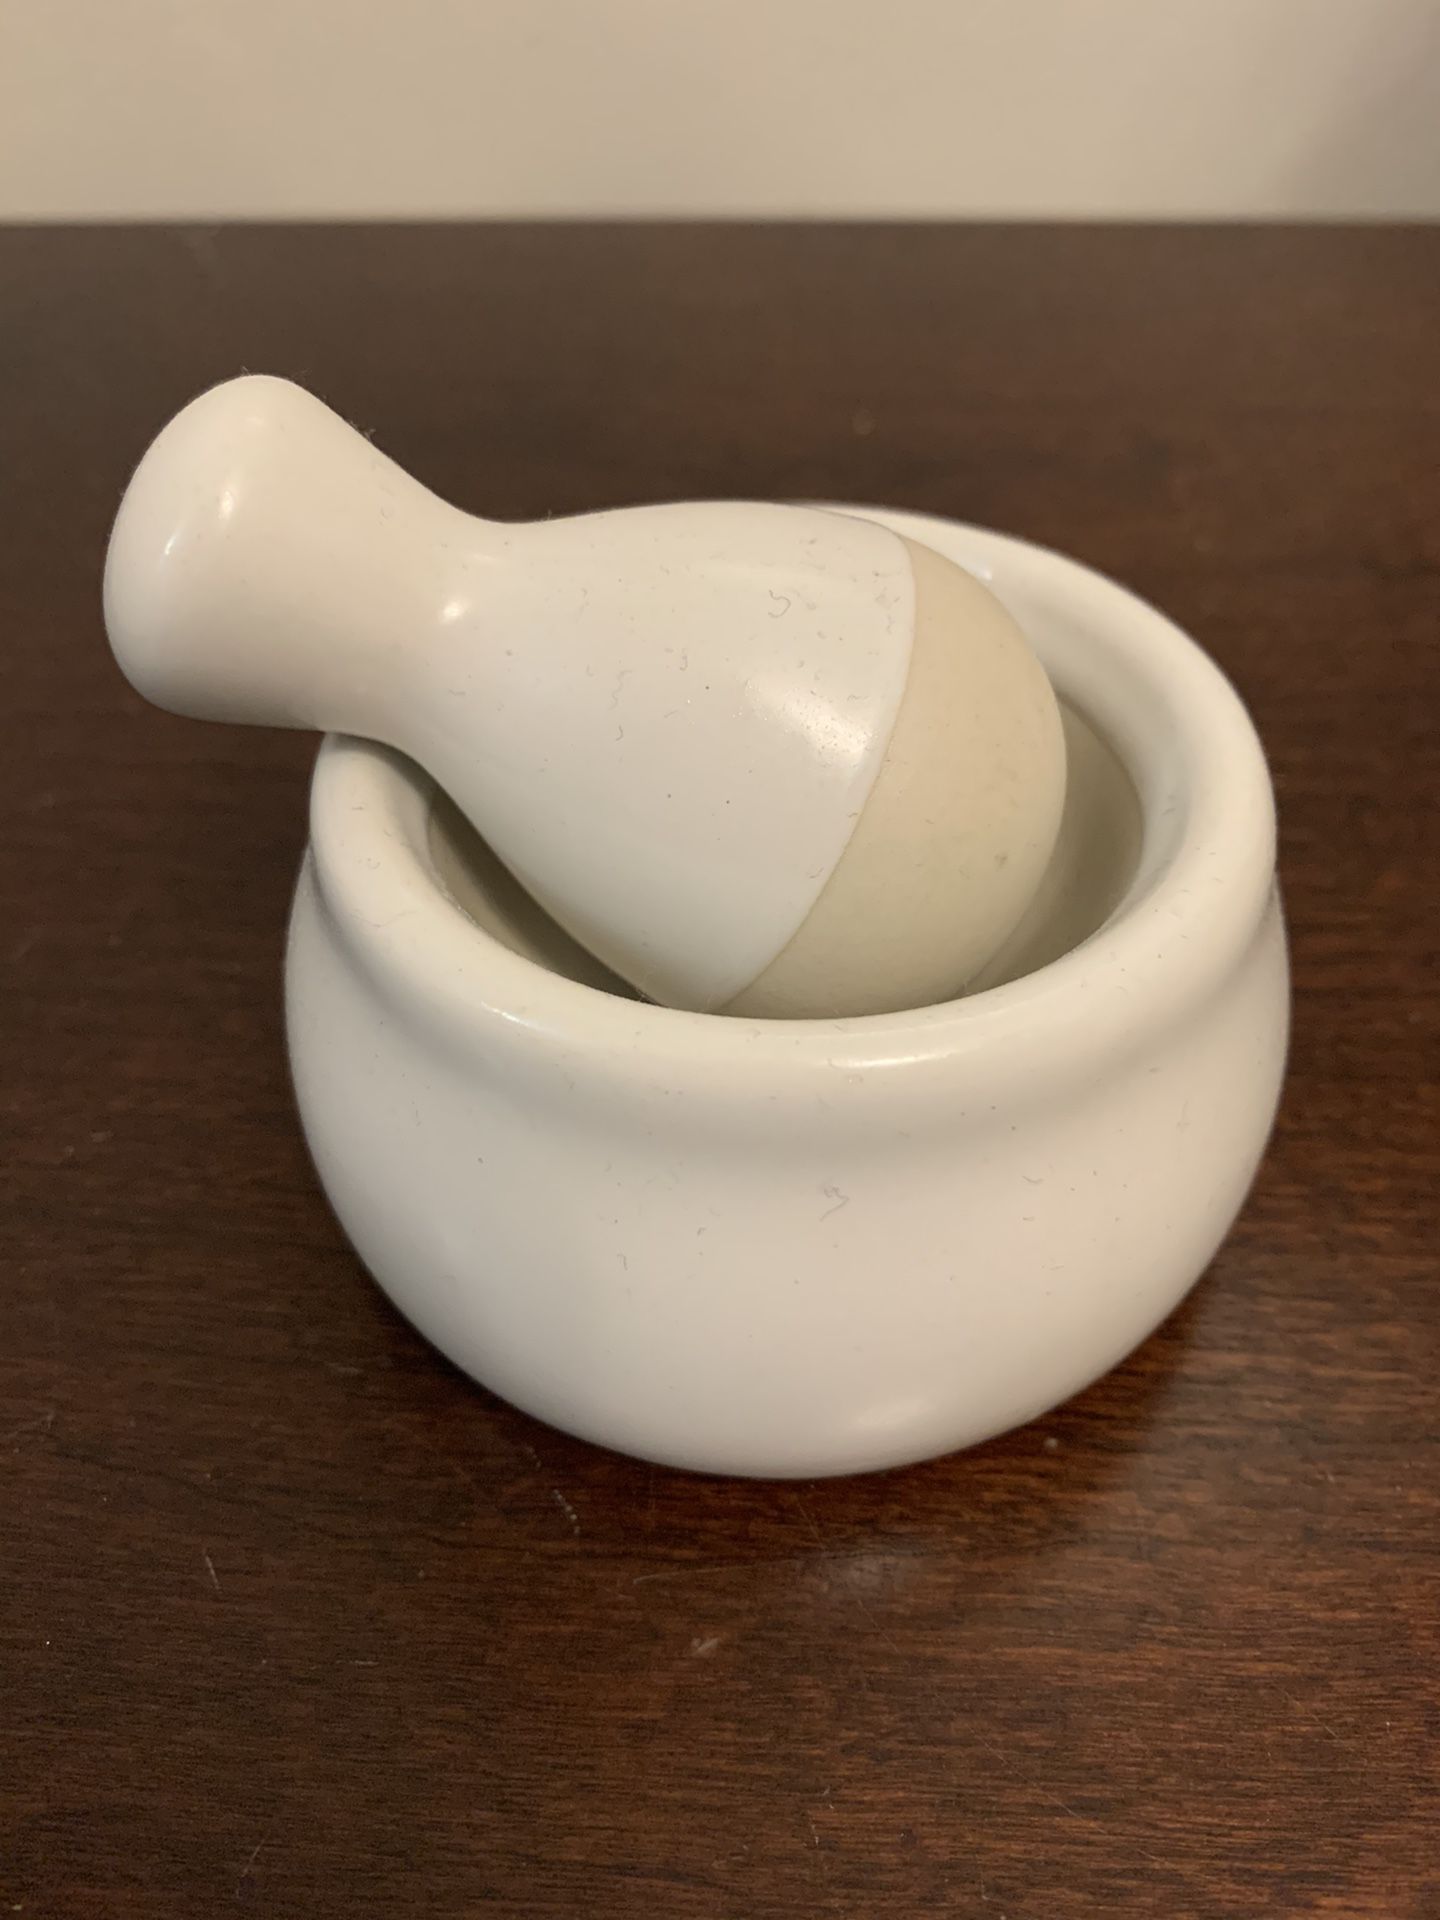 Small garlic smasher ceramic